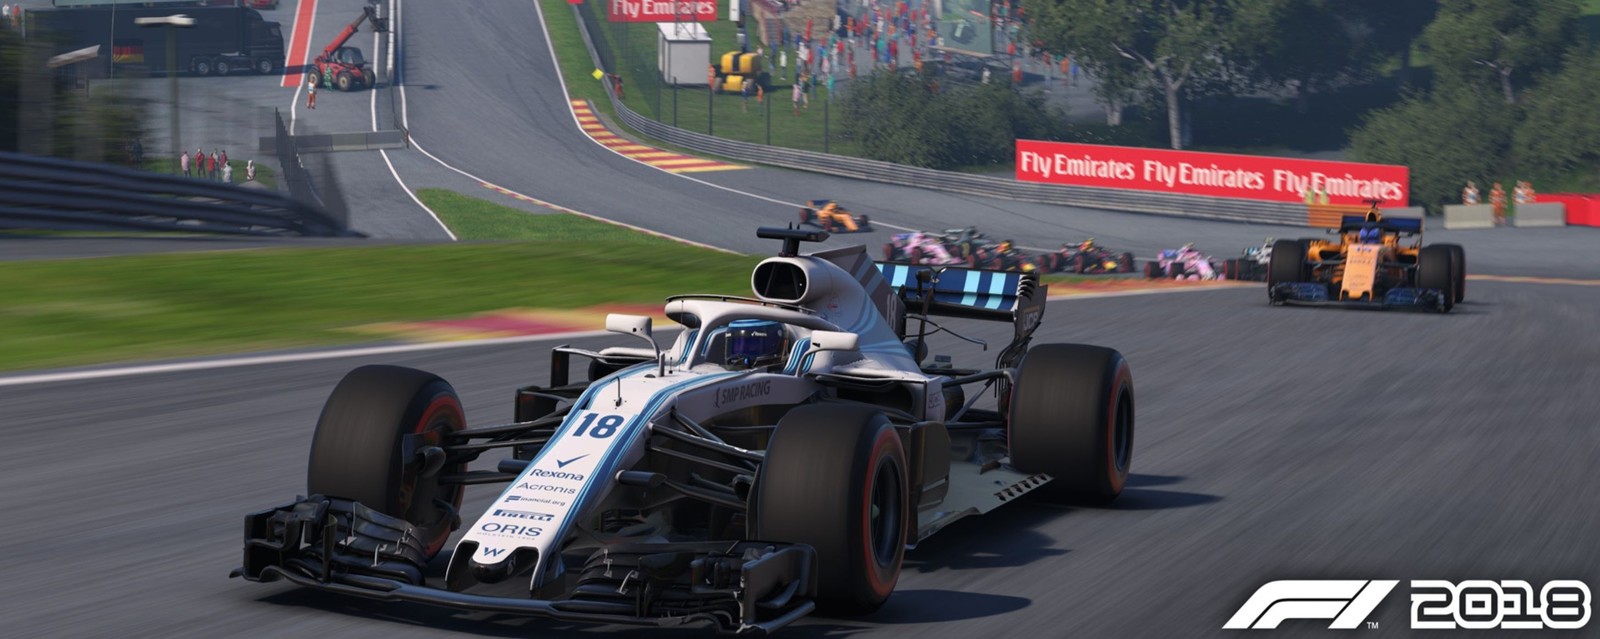 Формула в 2018 году. F1 2018. Ф1 2018 игра. F1 2018 (Xbox one). F1 2018 игра геймплей.